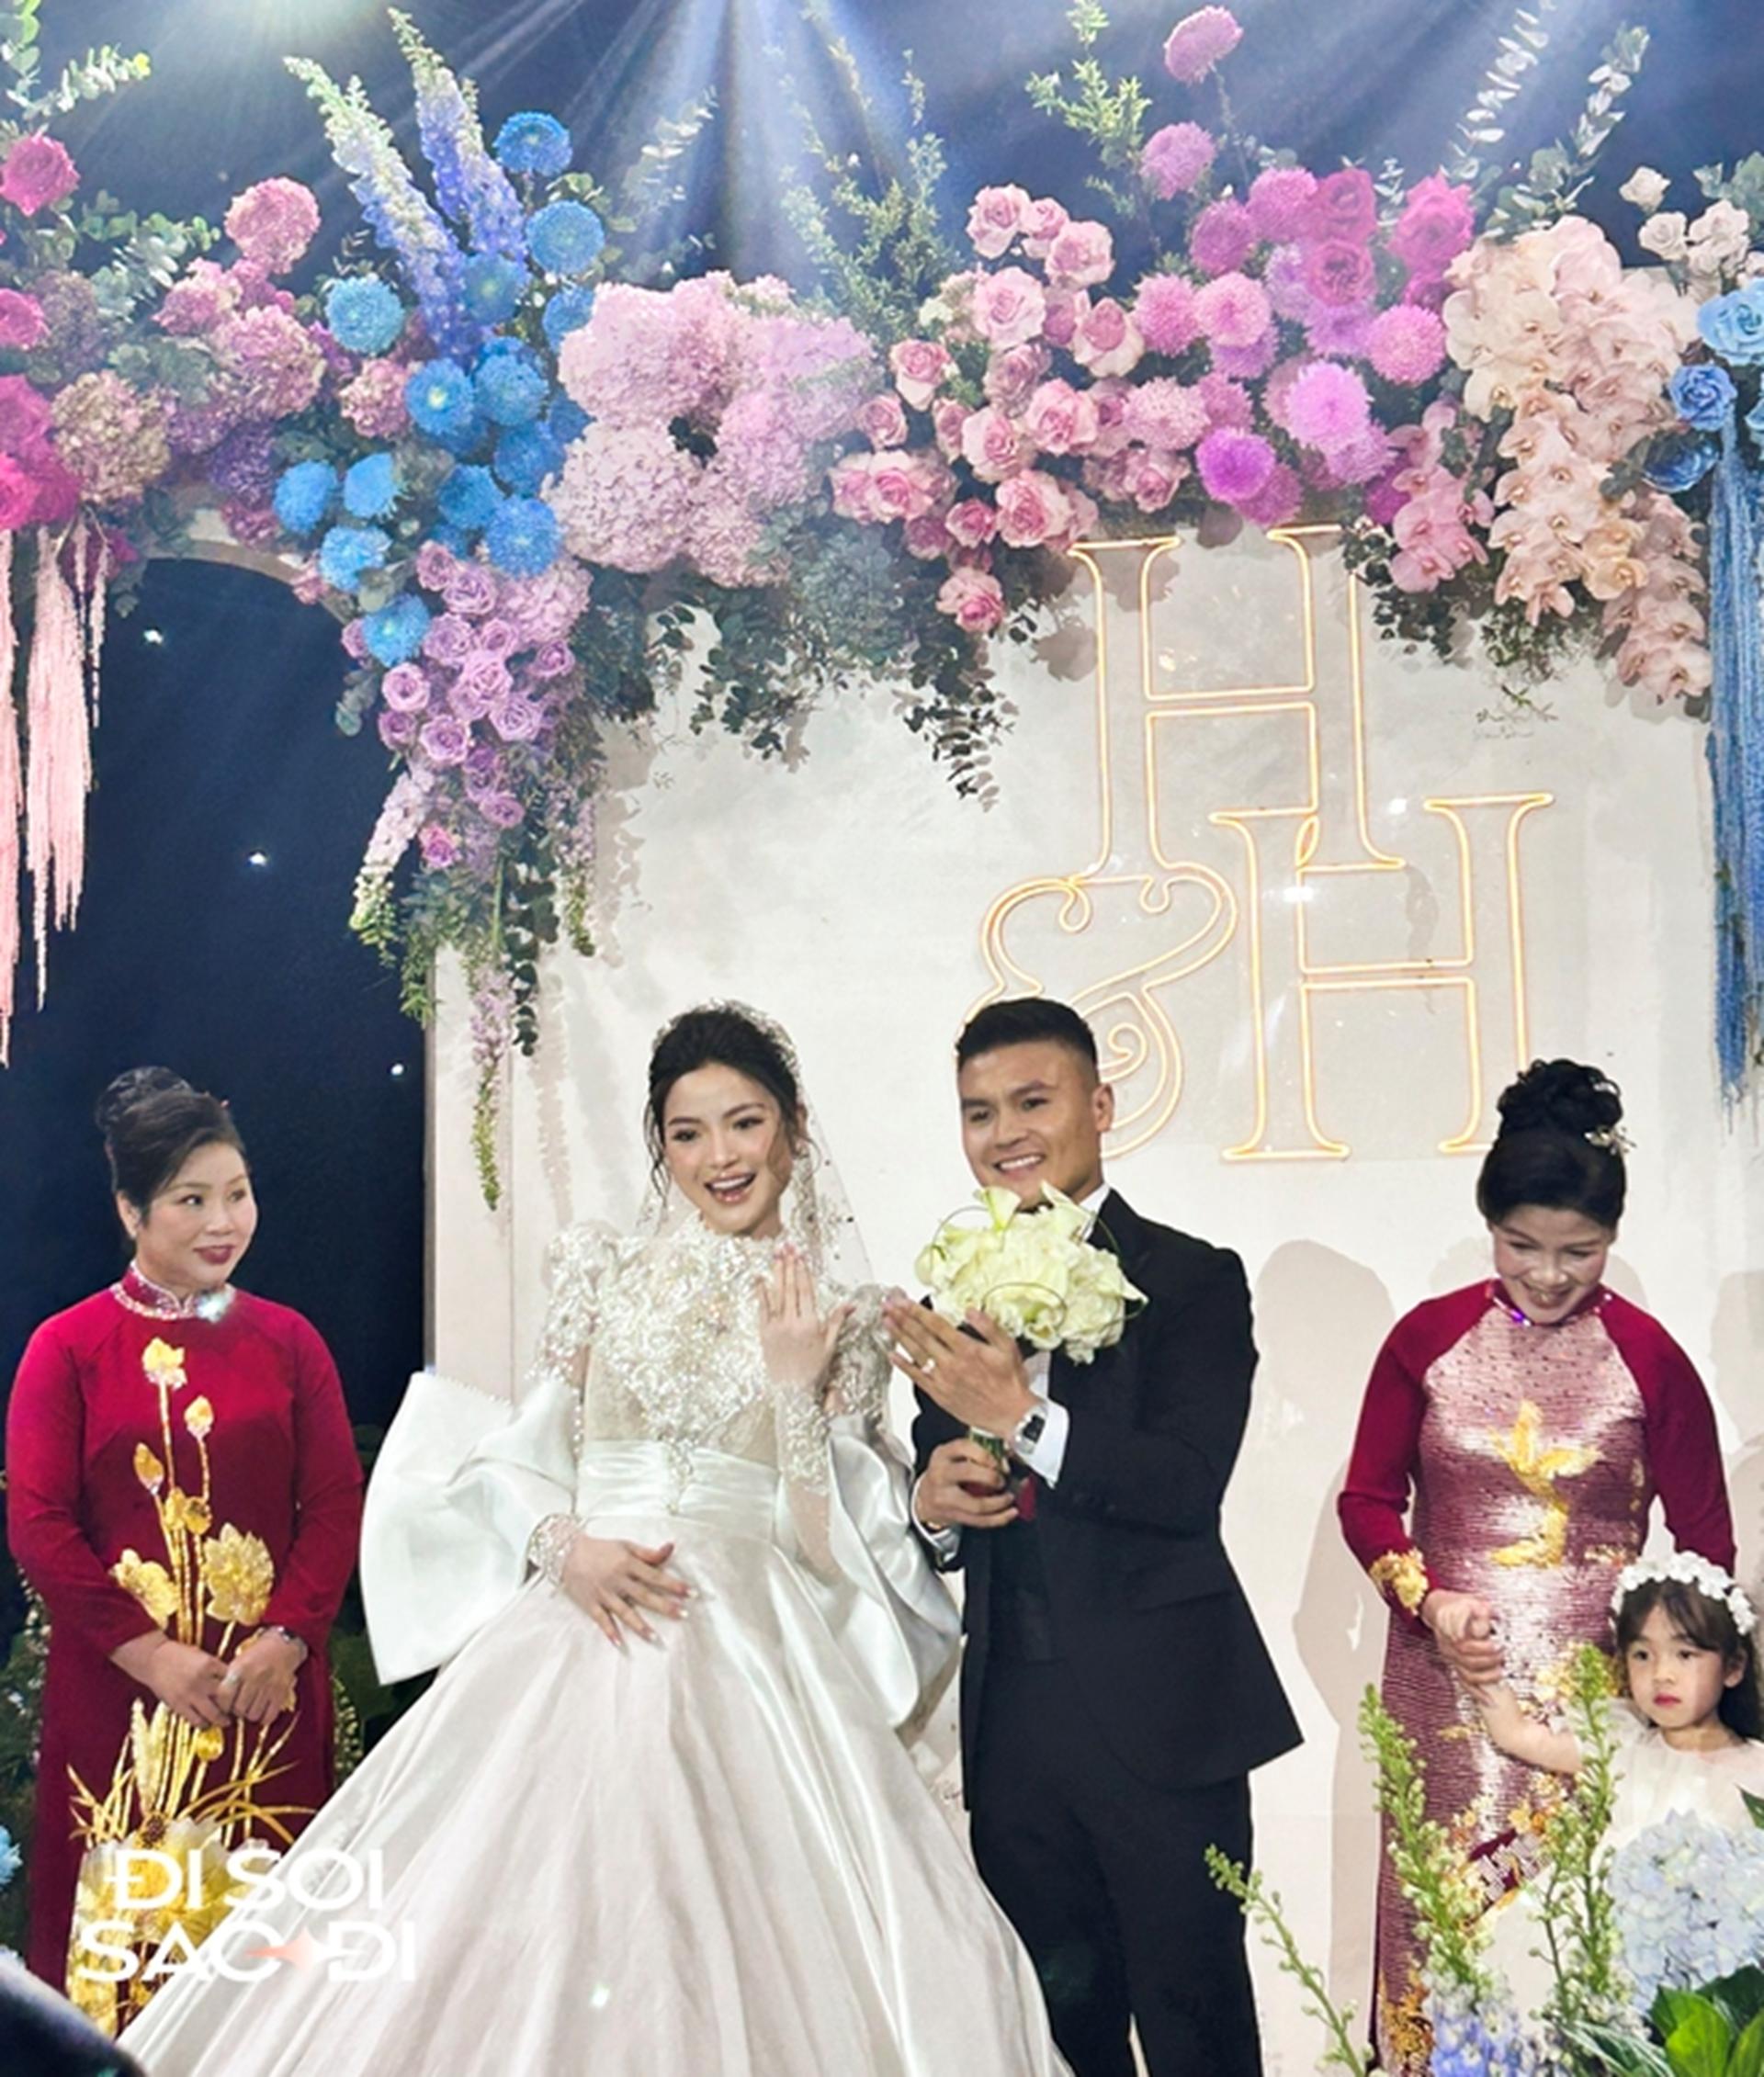 Chùm ảnh nét căng: Toàn cảnh đám cưới sang chảnh của Quang Hải và Chu Thanh Huyền, khoảnh khắc công bố tin vui cực ý nghĩa!-13